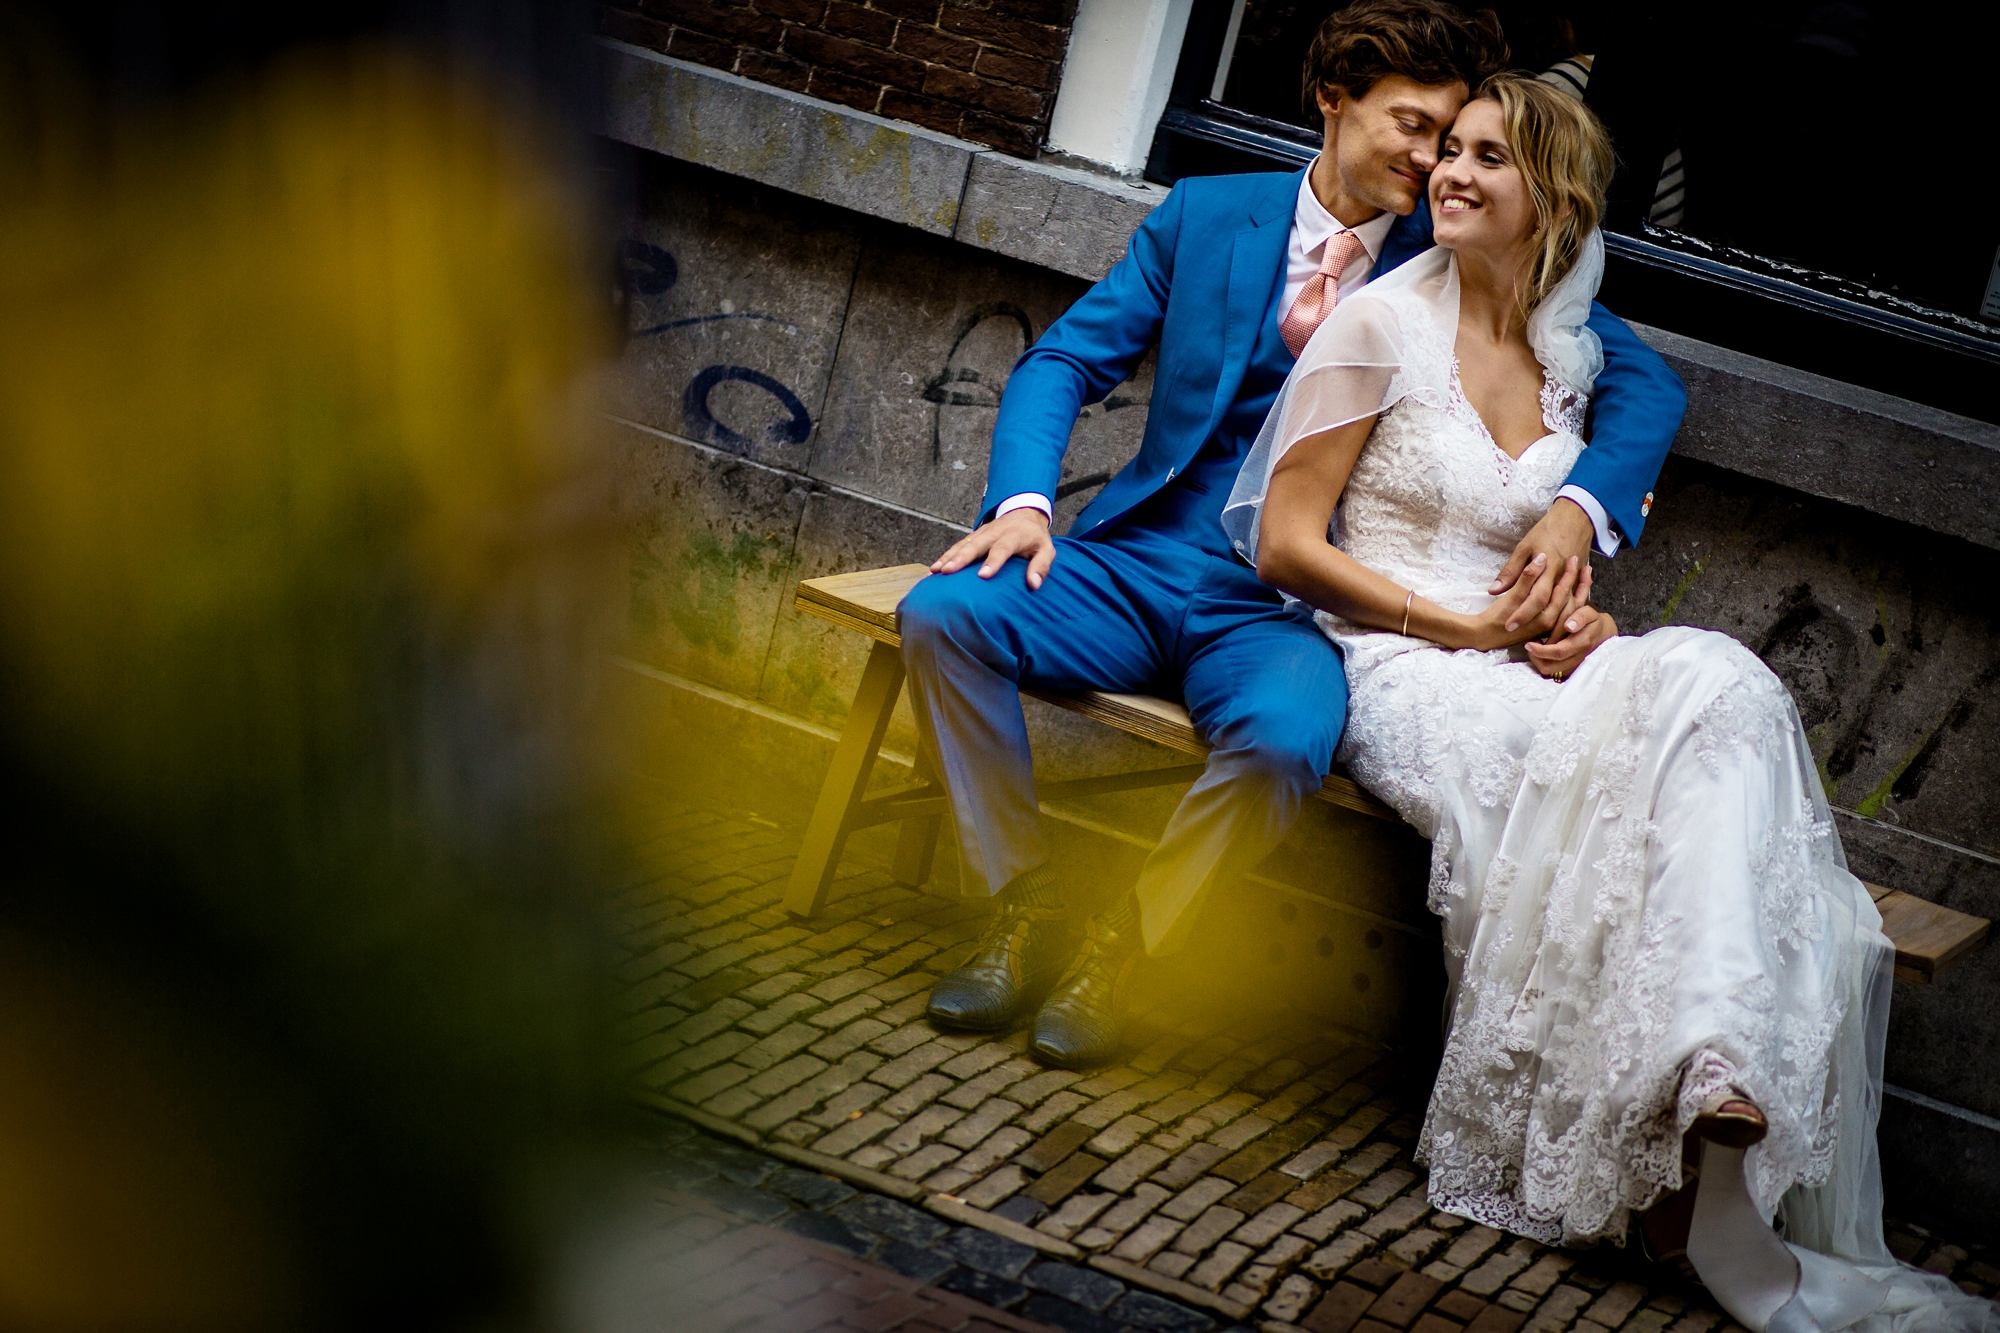 bestmenweddings-bruidsfotografen-weddingphotographers-utrecht-grand hotel karel v-lutherse kerk-soesterduinen-awardwinning photography_1535.jpg